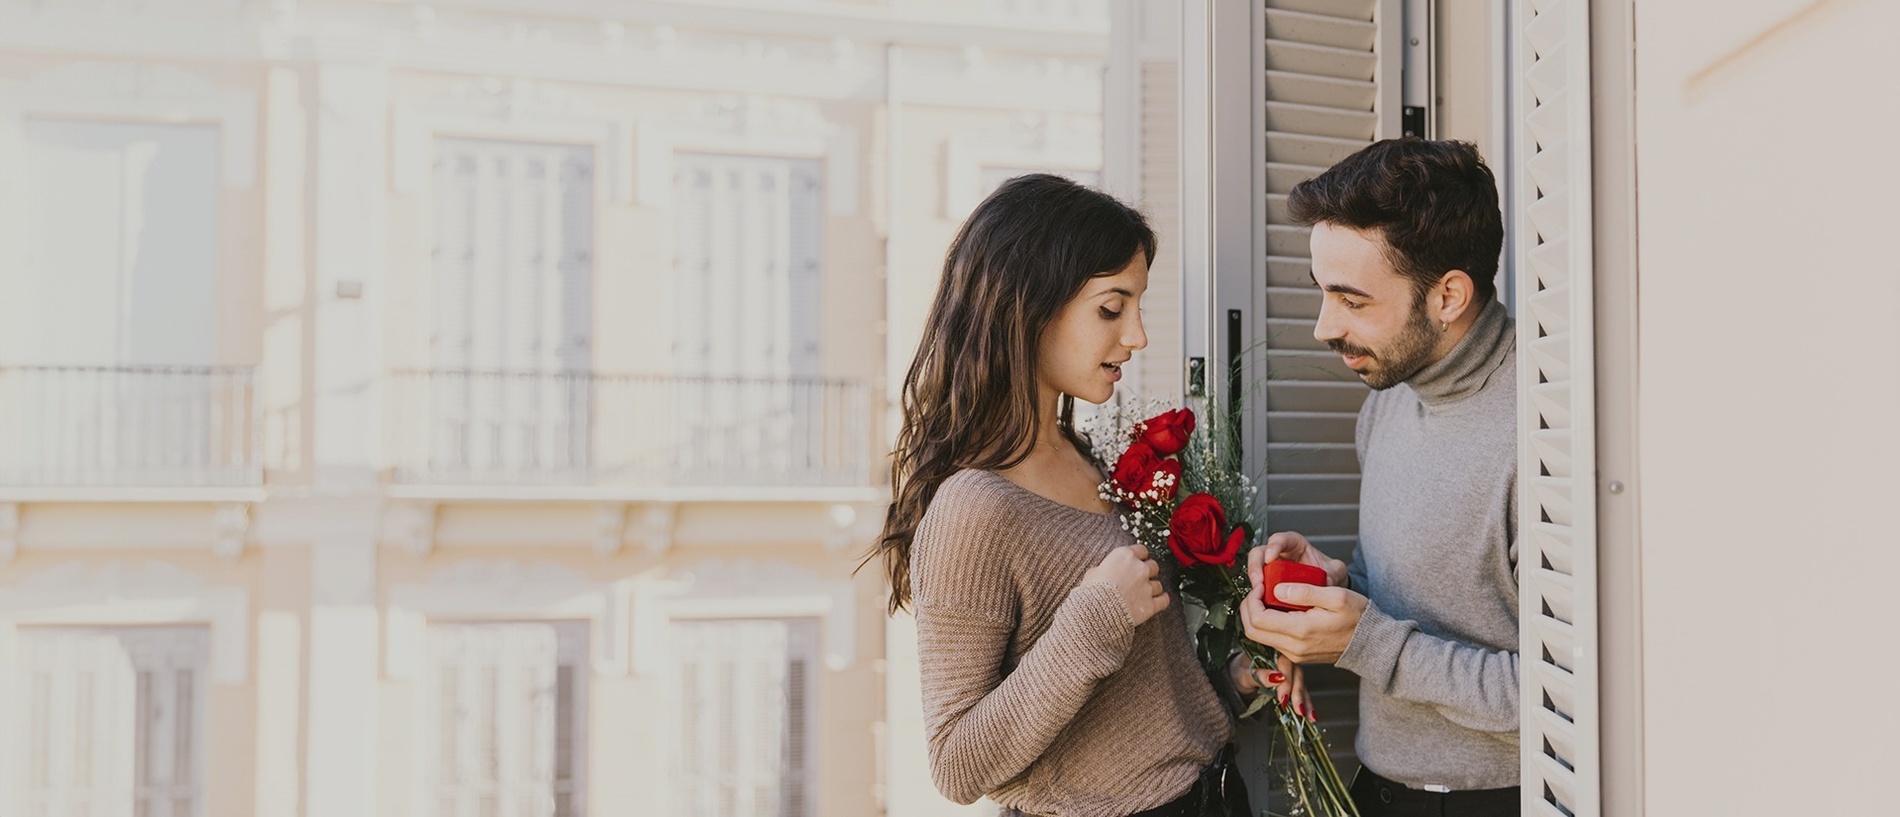 un hombre le da a una mujer un ramo de rosas rojas